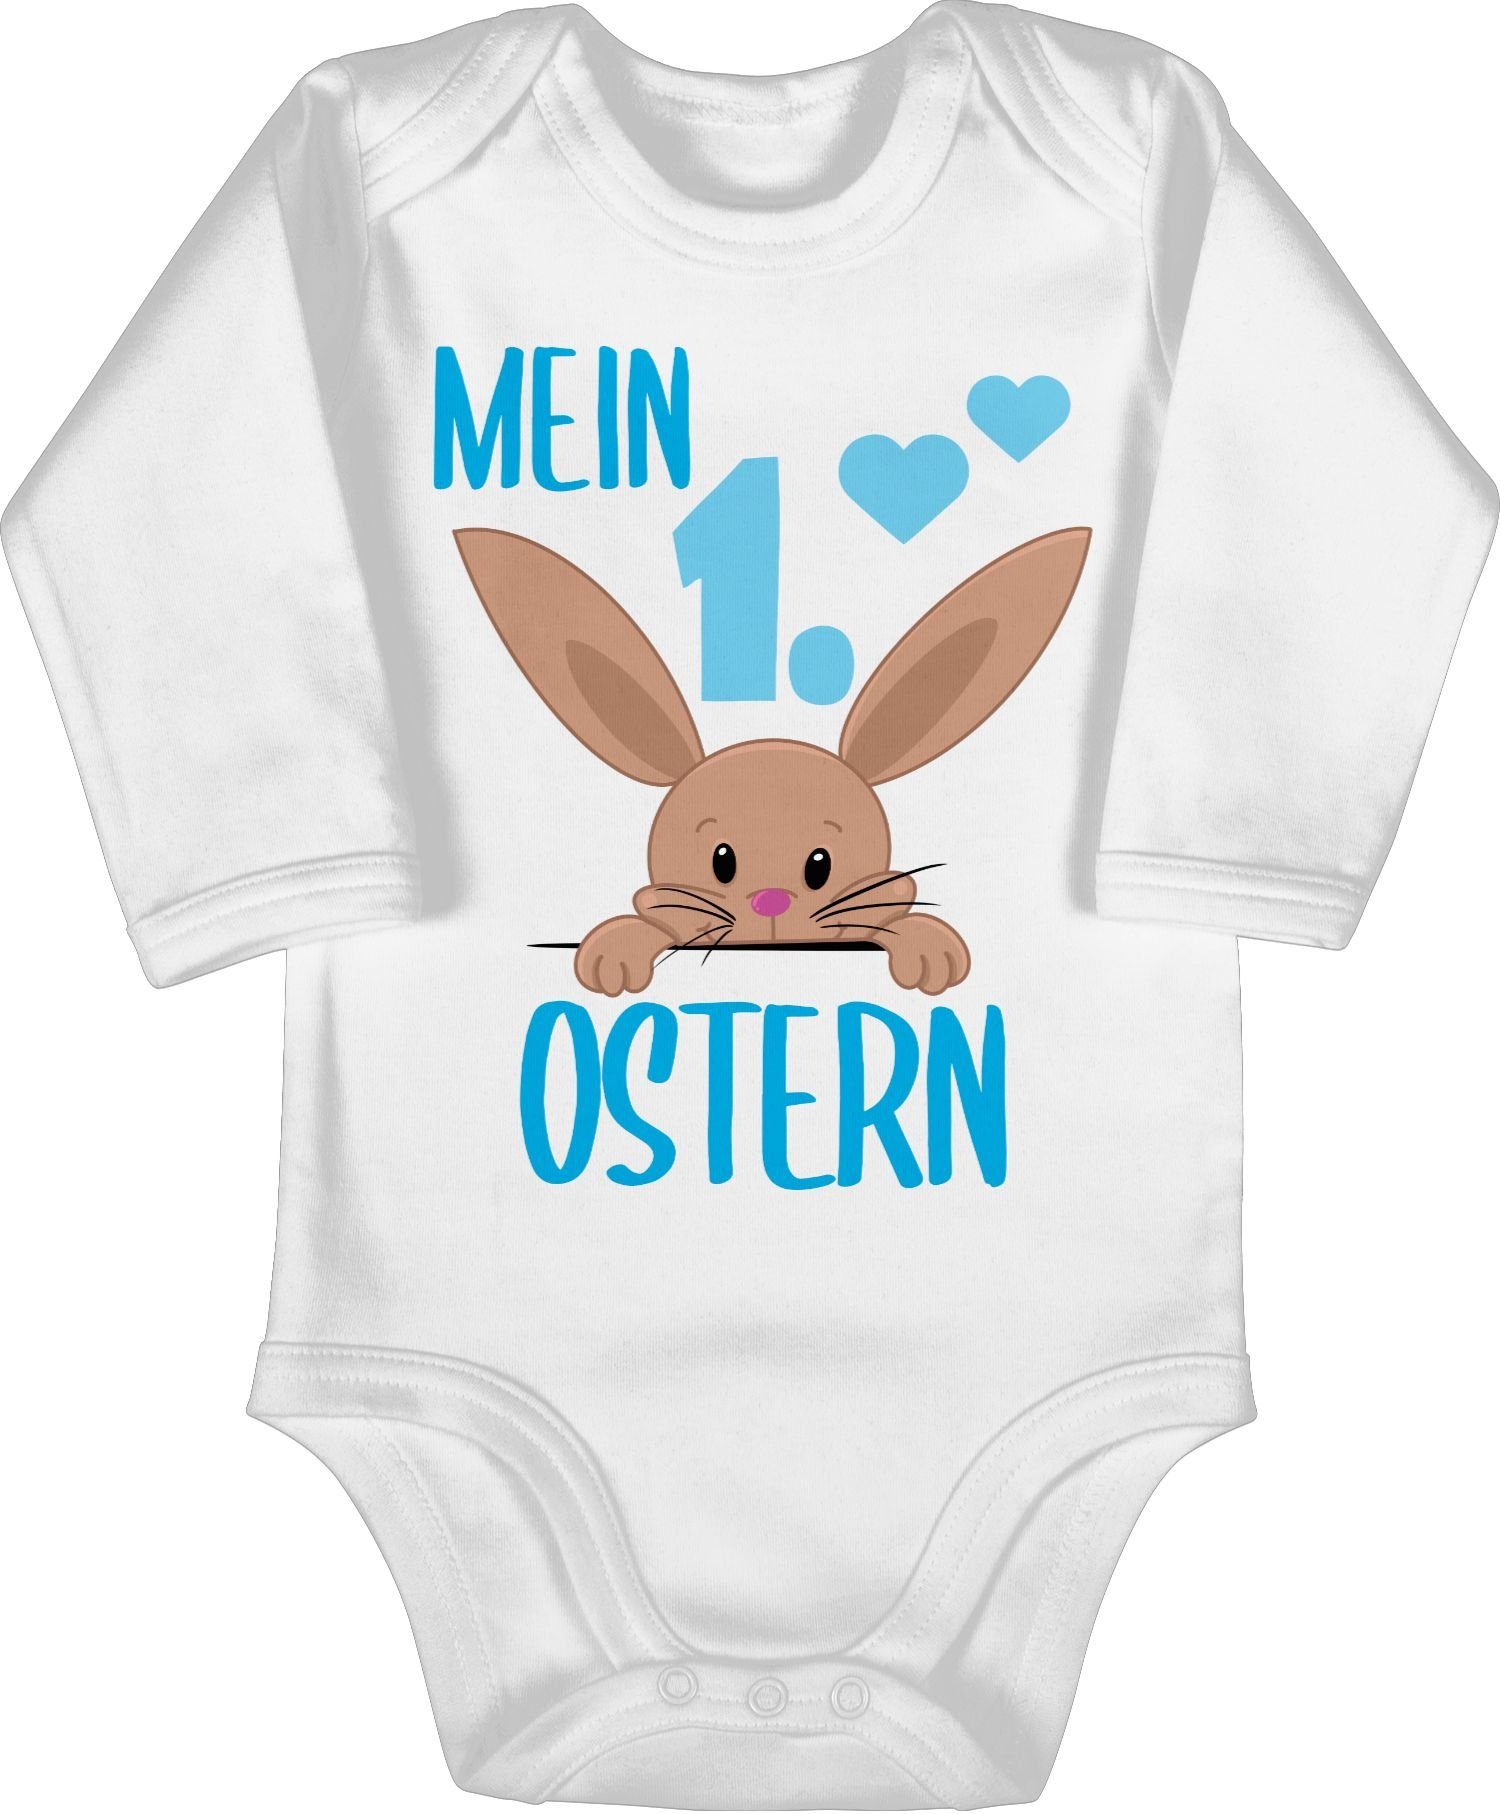 Shirtracer Shirtbody »Mein 1. Ostern süßer Hase blau - Ostergeschenke Baby  - Bio Baby Strampler langarm« Ostern Baby Outfit Babykleidung online kaufen  | OTTO